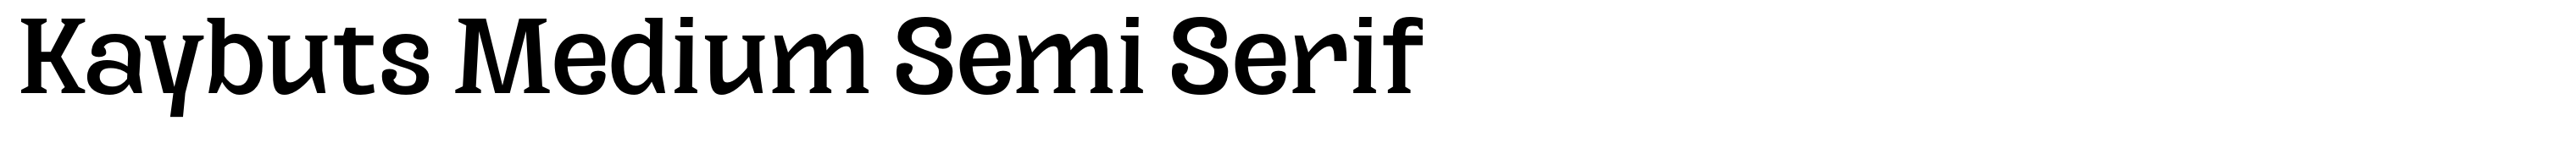 Kaybuts Medium Semi Serif